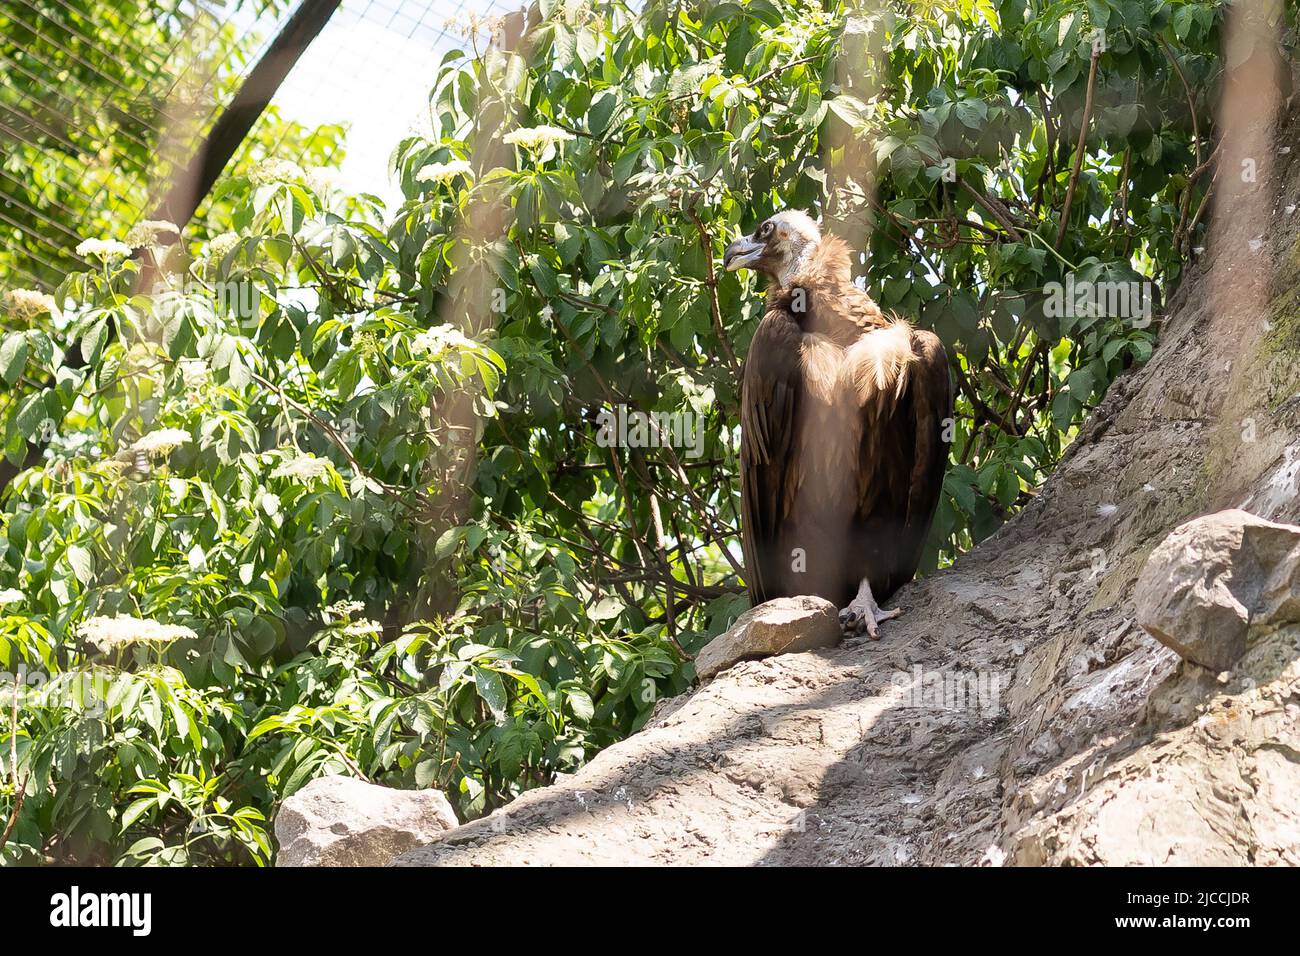 Griffon è un uccello selvatico e rapace, un uccello griffin in uno zoo. Nuovo. Foto Stock